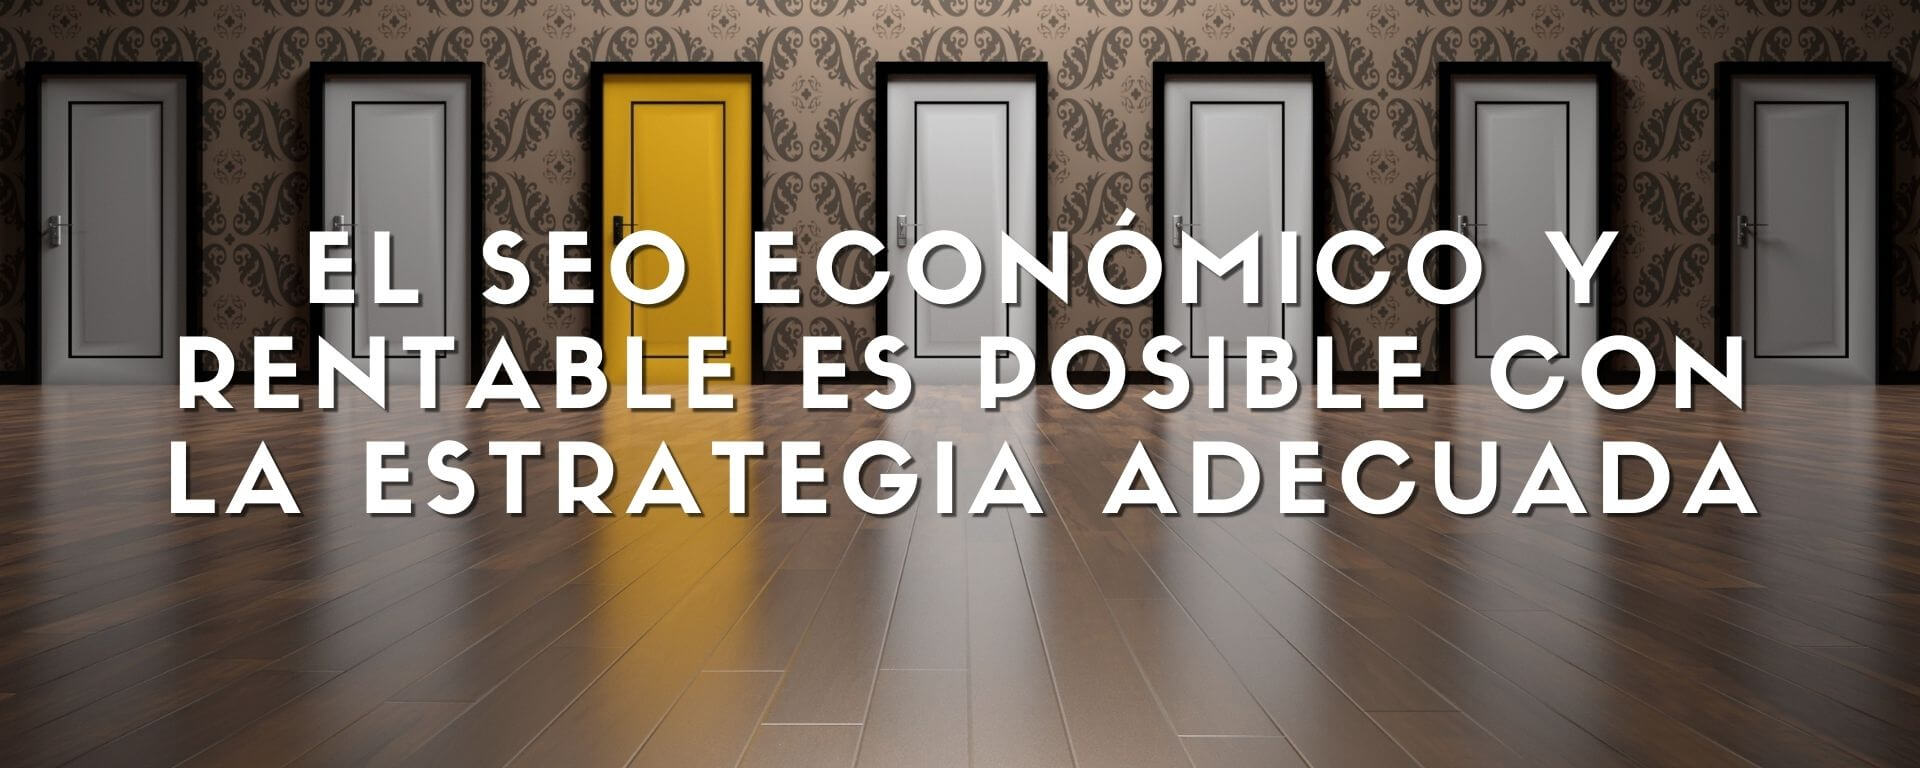 El SEO económico y rentable se puede lograr a través de estrategias personalizadas.